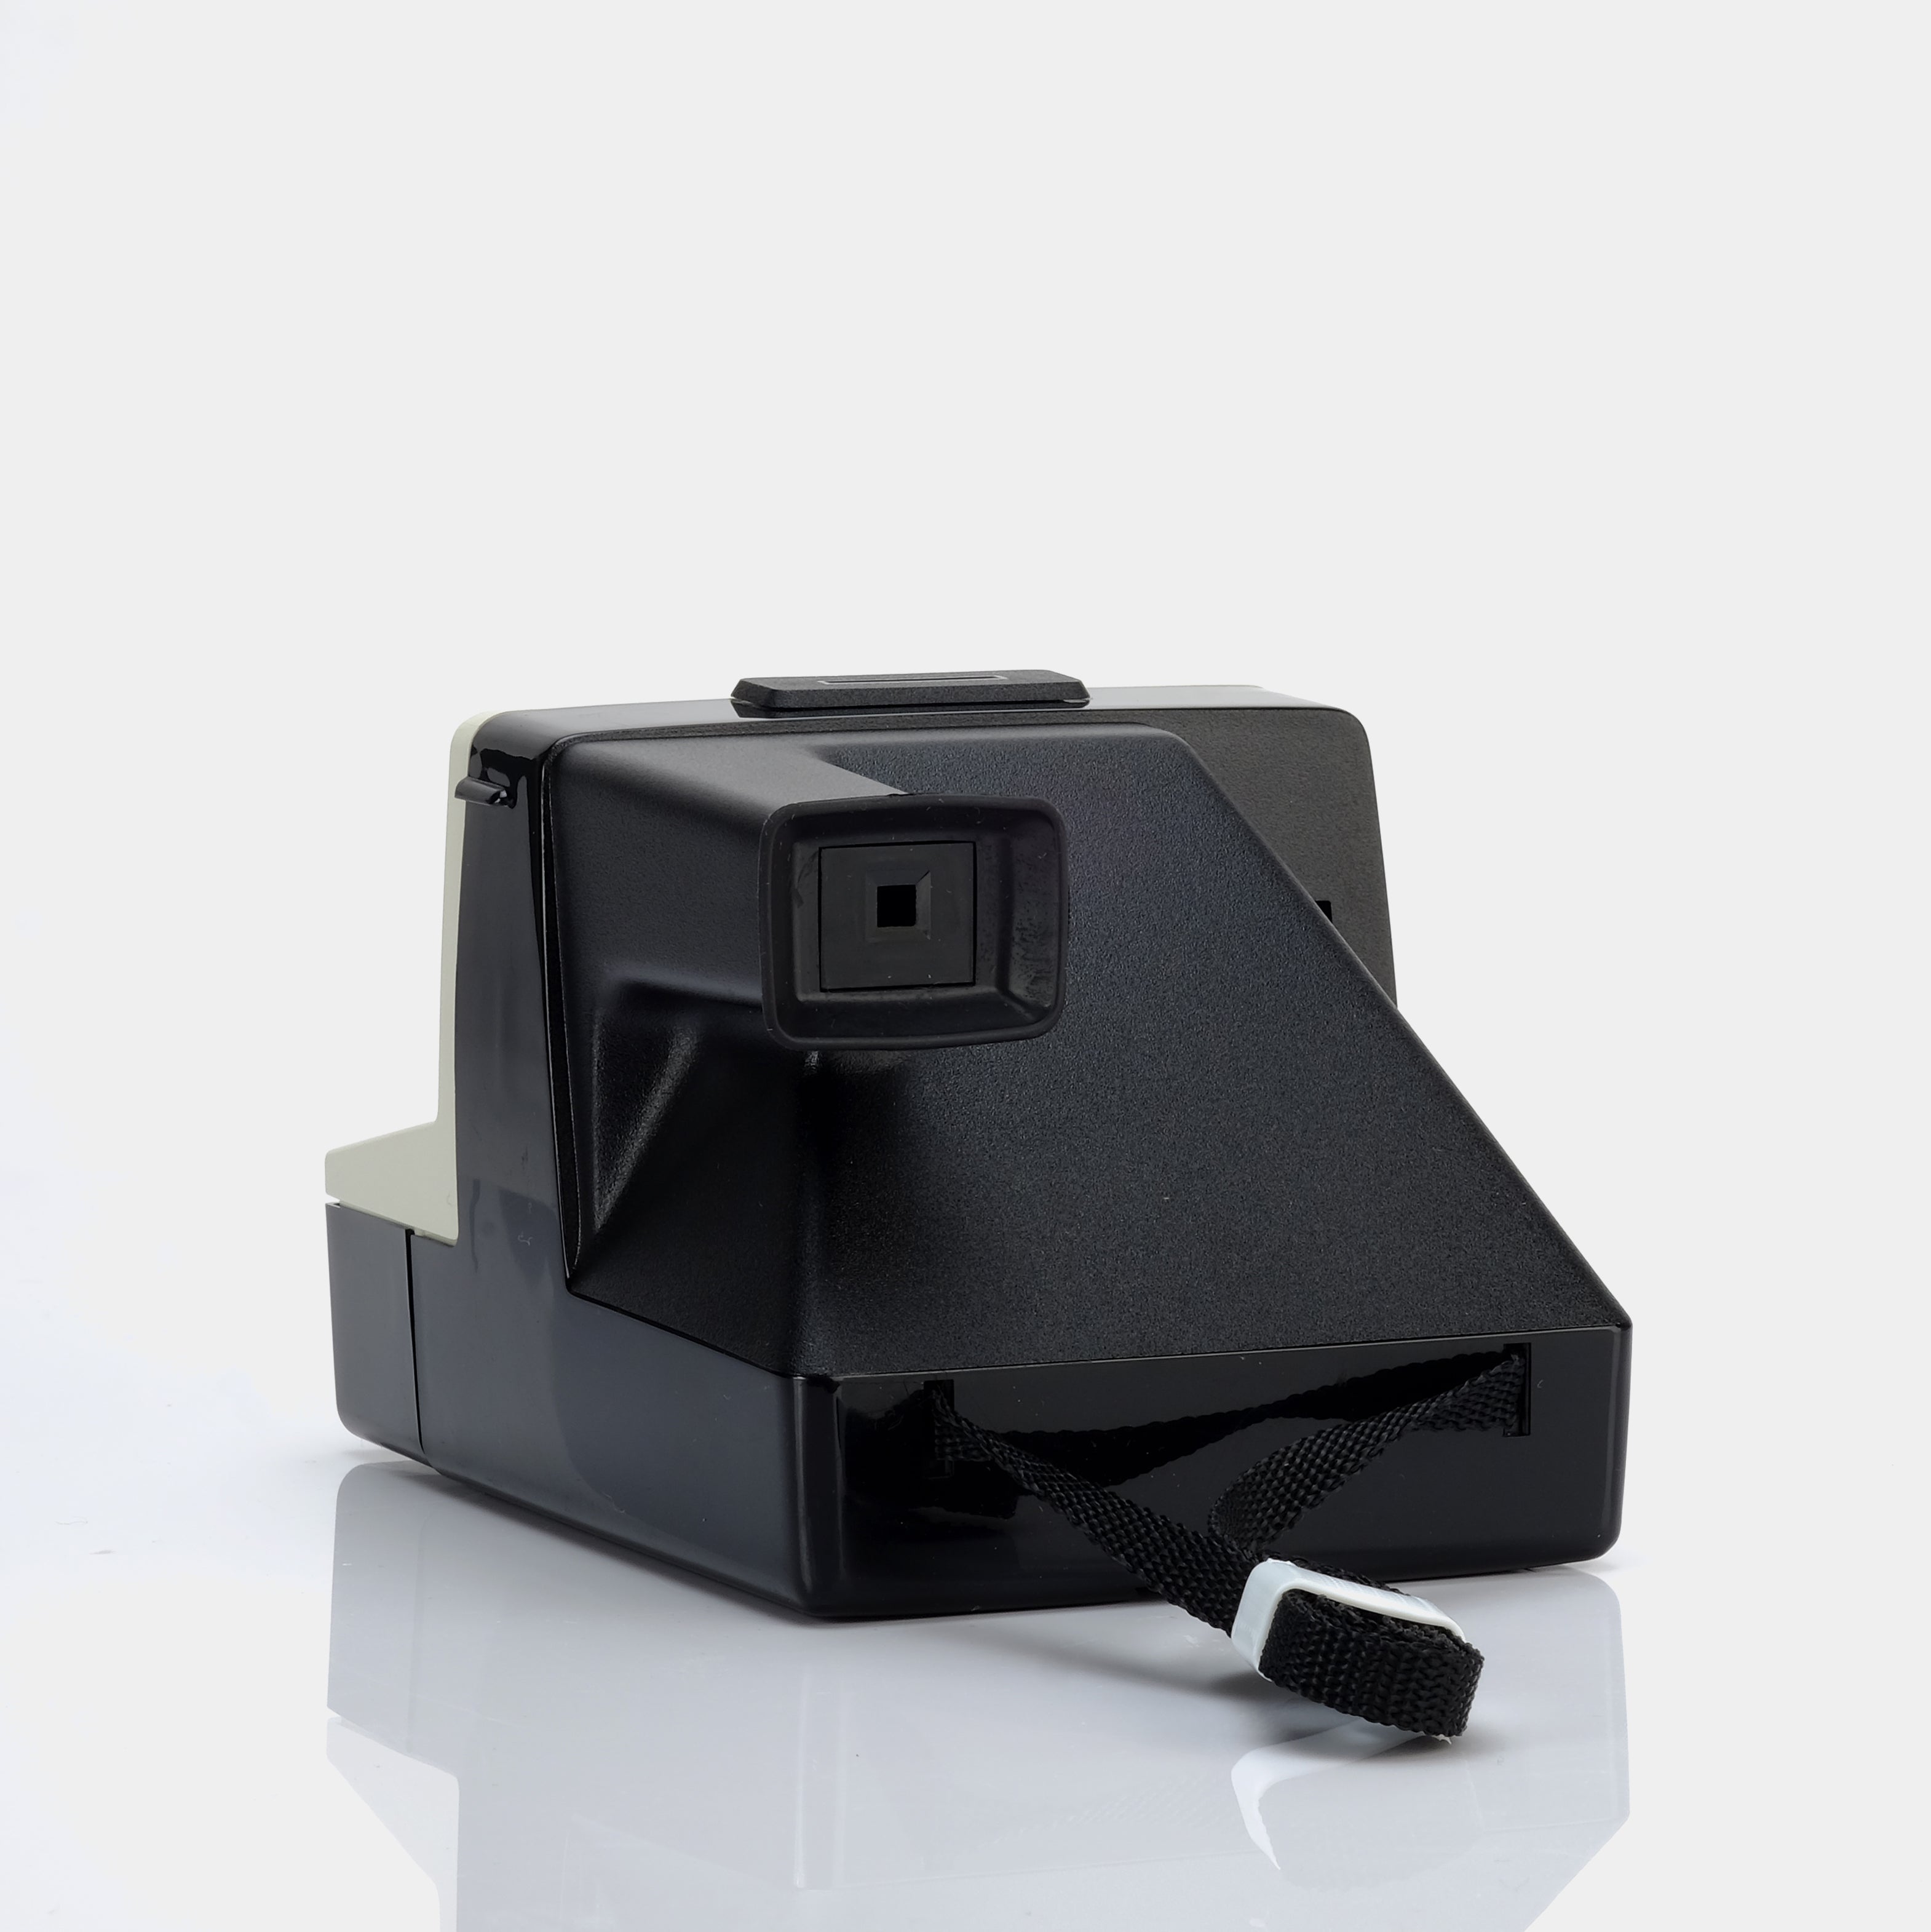 Polaroid SX-70 Instant 1000 Instant Film Camera